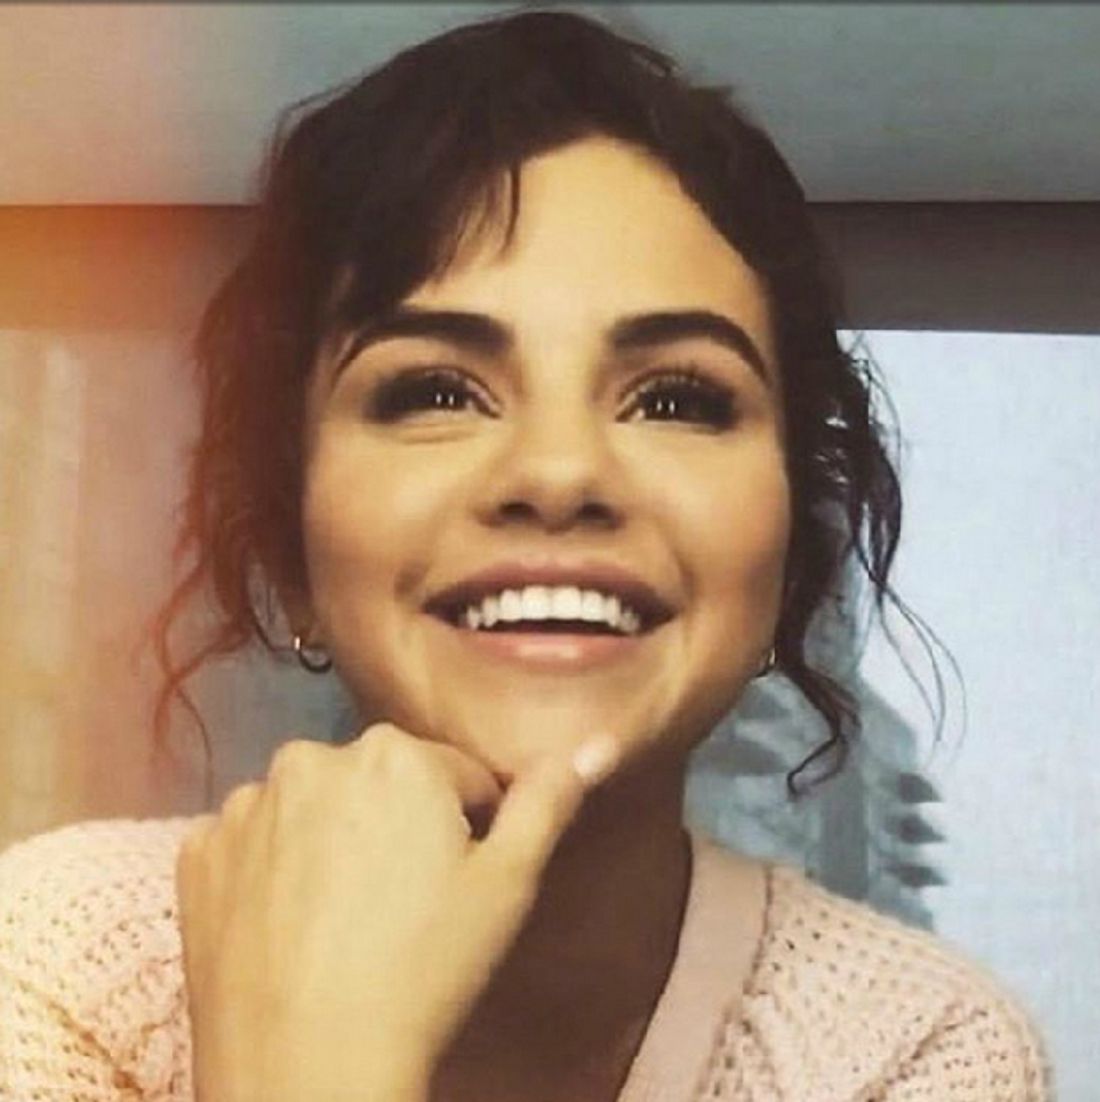 Seit Selena Gomez im September dieses Selfie gepostet hat, gab es kein Foto mehr von ihr... bis jetzt!